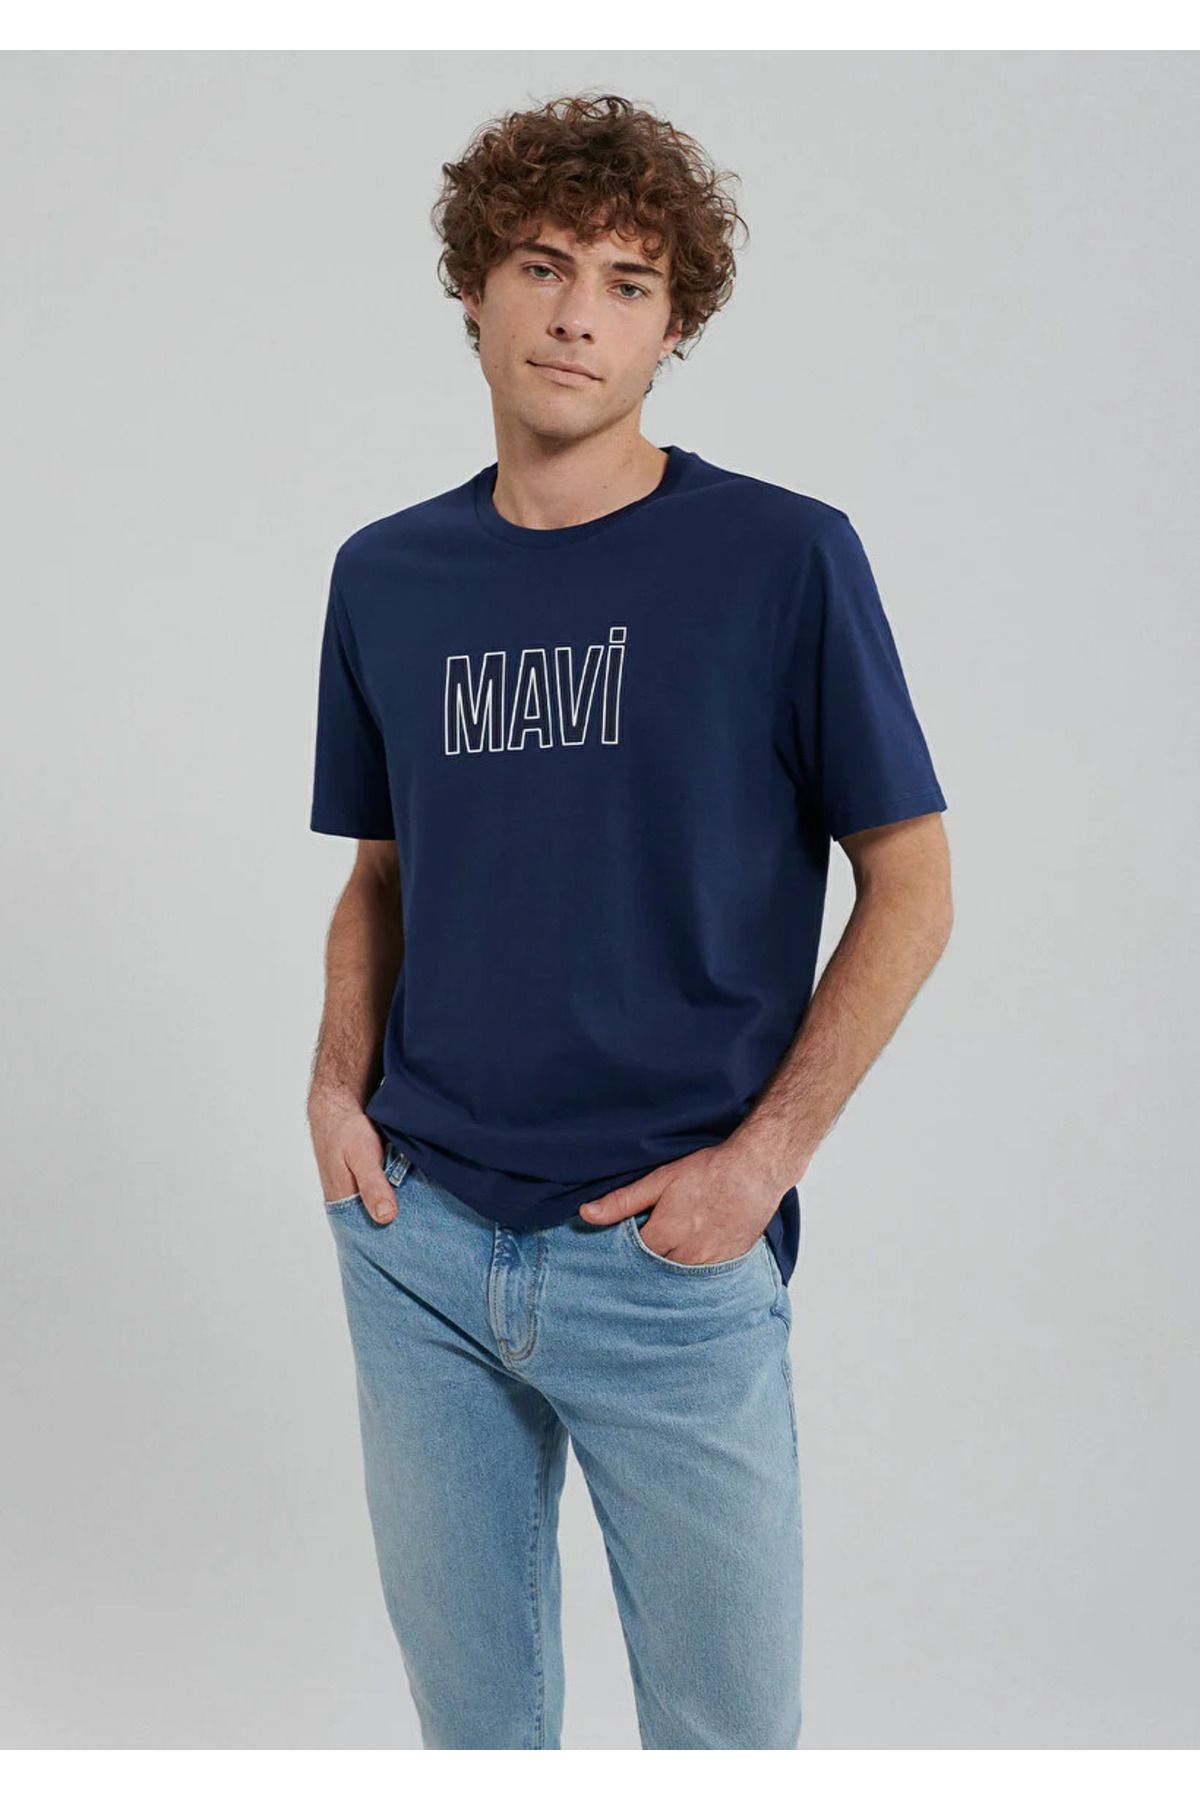 Mavi پیراهن چاپی آبی M066842-70758